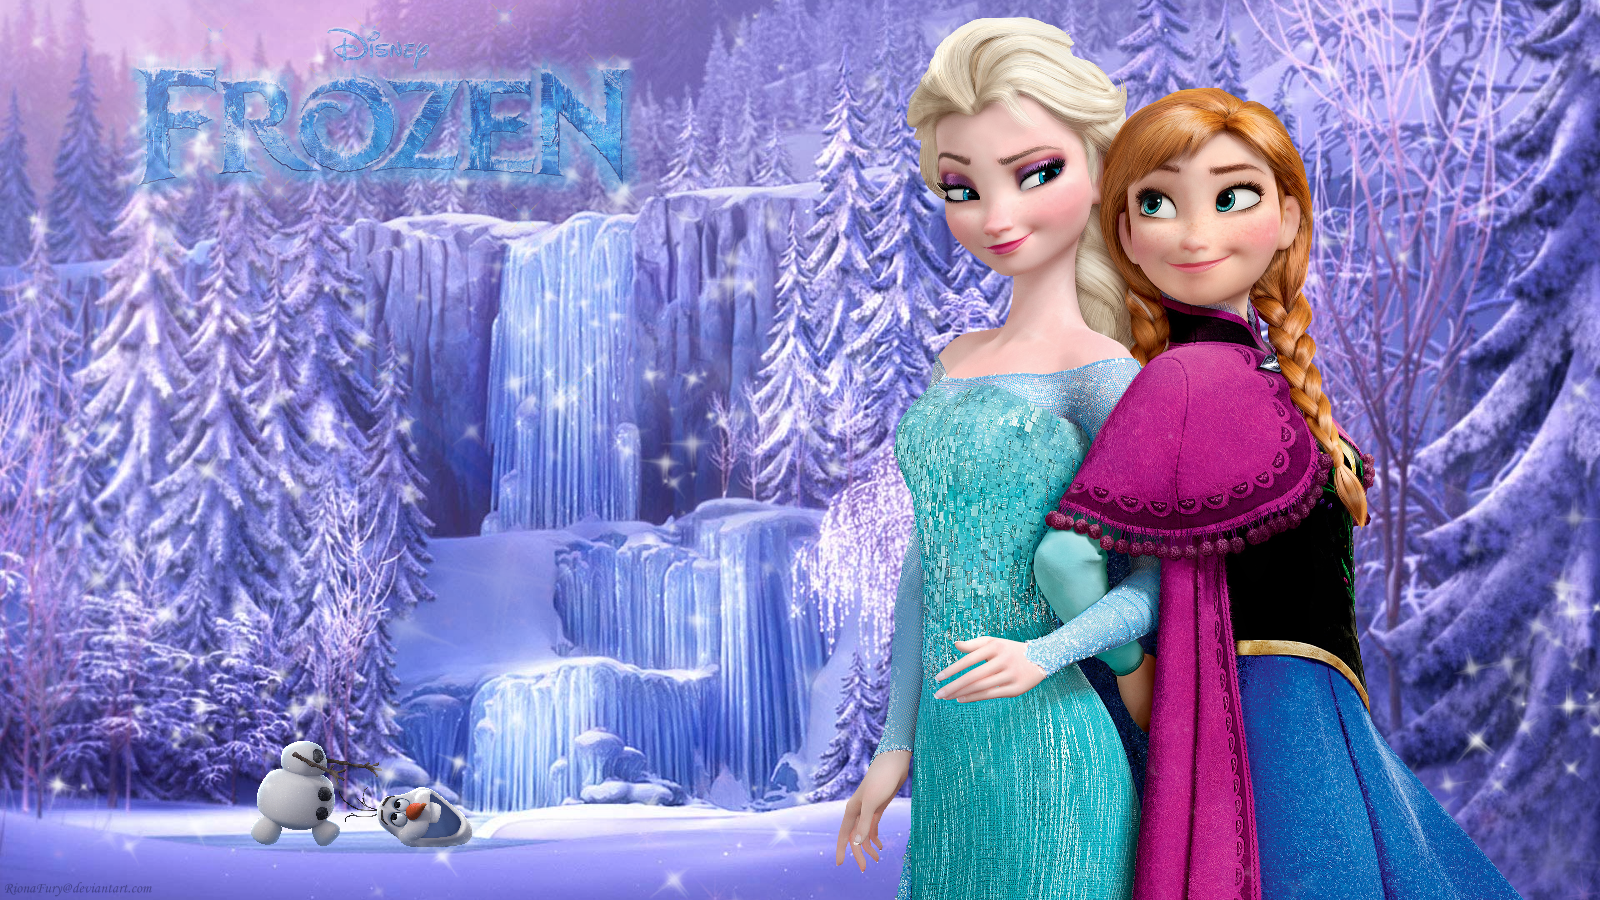 Frozen Sisters   Frozen Wallpaper 37732276